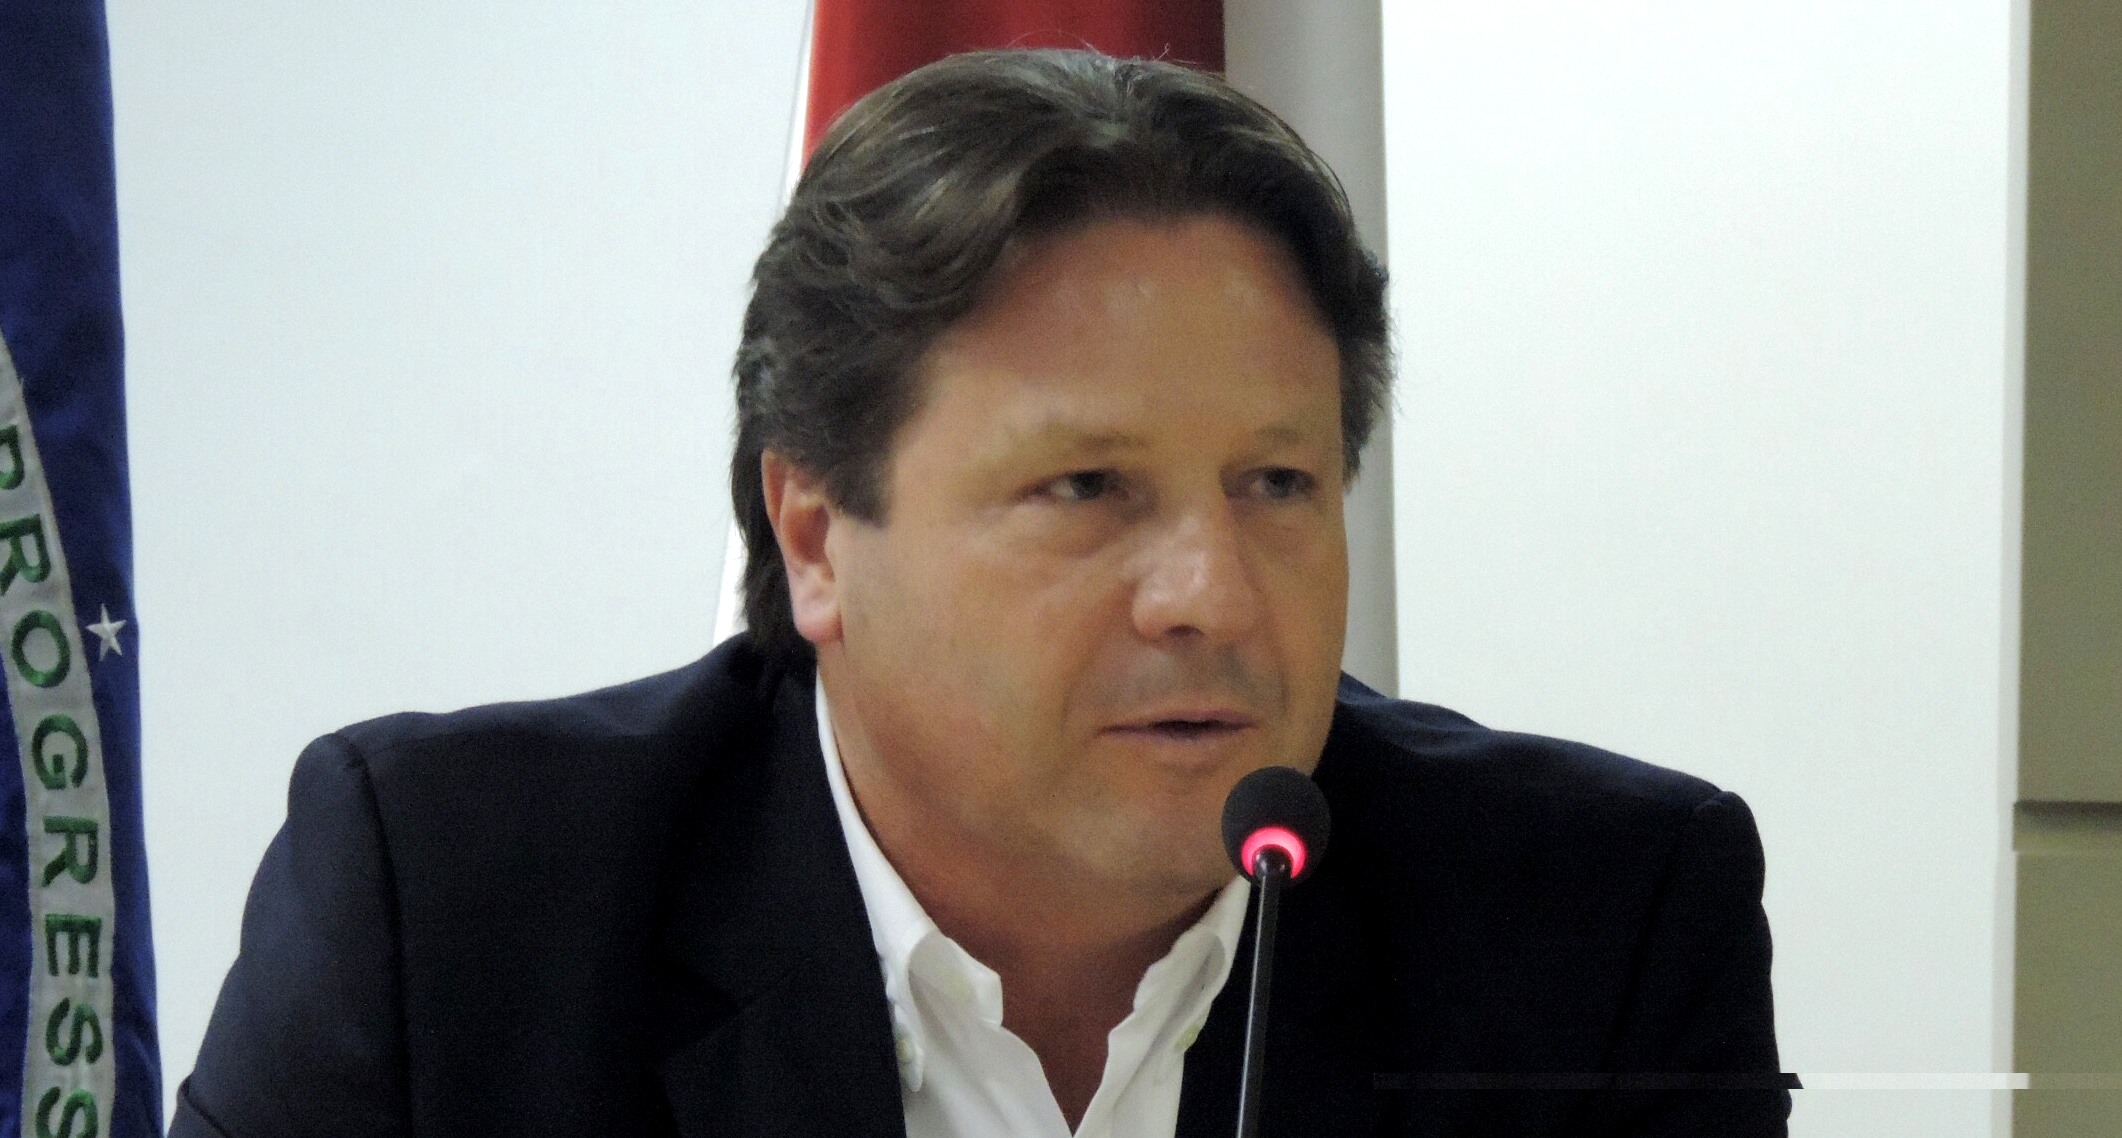 Wilson Périco é presidente do Cieam - Centro das Indústrias do Estado do Amazonas (Foto: Cieam/Divulgação)